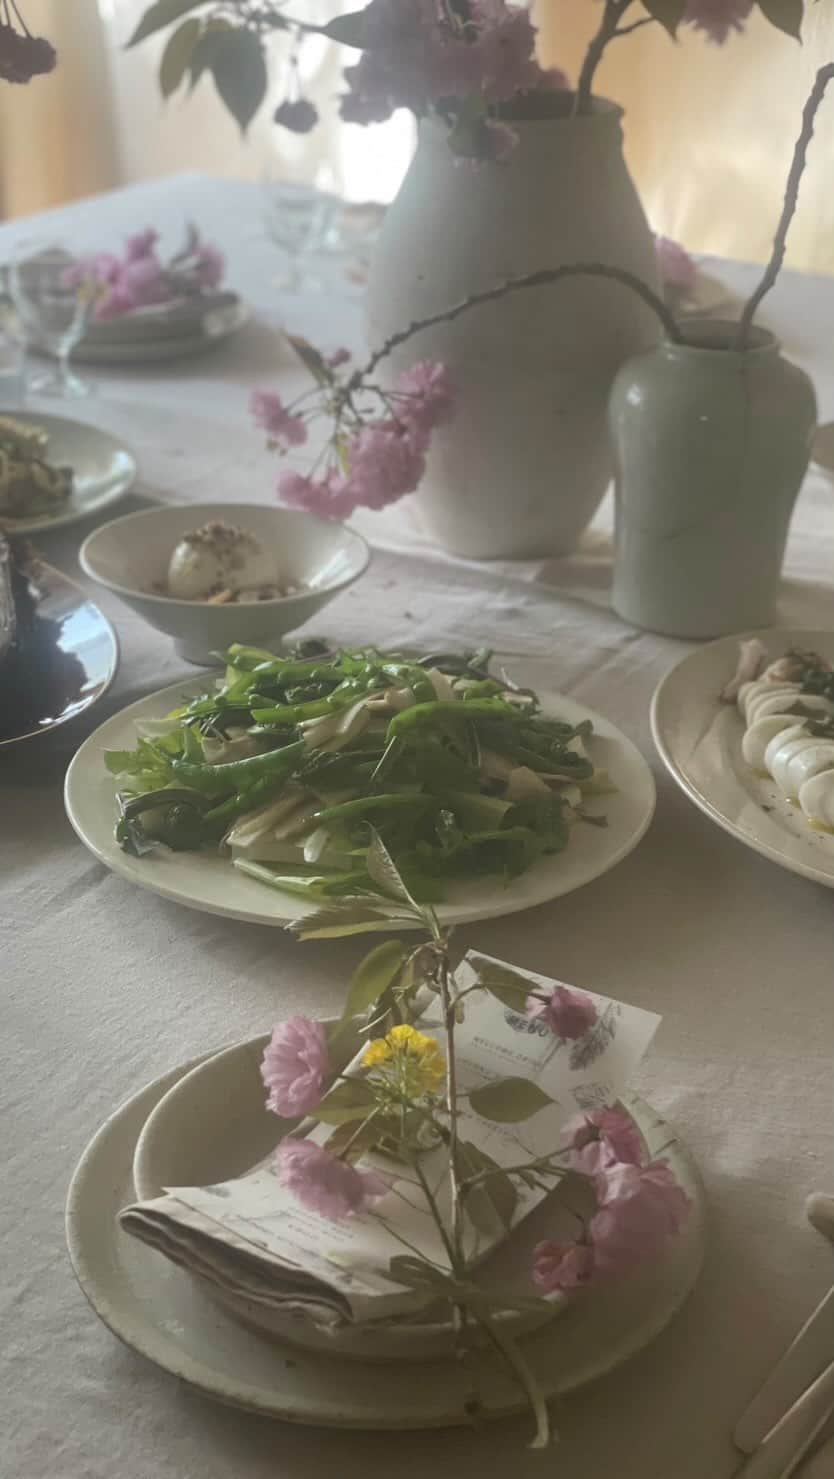 殿柿佳奈のインスタグラム：「やさいの教室〜山の菜〜🌿 SHUNNO KITCHEN  @shunnokitchen  レシピのない料理教室✨  まずはそのまま野菜を食べて、そこから何を作るか考える。✨  メニューはその日のオンリーワン💖  春の芽吹きの季節。 山の恵みの山菜と季節の野菜をたっぷりと使って。  季節の野菜を使って野菜を余すことなく丸ごと使って作るゼロウェイストクッキング。✨  気になっていたベジブロス✨ こんなに濃い美味しいスープができるなんて感動。  今回のメニュー✨ ⚫︎タケノコのオーブン焼き　アク抜きなしでできる💖 ⚫︎白イカのスチーム〜木の芽ソース山椒塩漬け添え〜 ⚫︎うるい、うど、こごみ、わさび菜、パクチーのサラダ ⚫︎ふきのとうと新玉ねぎのソテー ⚫︎タケノコとフキノトウのパスタ ⚫︎山菜のフリット（ふきのとう、ネギ坊主、うこぎの新芽&新玉ねぎかき揚げ） ⚫︎新玉ねぎと新じゃがいものベジブロスポタージュ ⚫︎季節のフルーツの前菜 ⚫︎ベジブロス　旬の野菜  などなど  山菜のほろ苦い旨みと、竹の子甘味✨ 竹の子をアク抜きなしで作れるメニューや、調味料はほぼオイルと塩のみ。✨  身体が喜ぶレシピとはまさにこのこと🙏❤️ 美味しかった🥰  五感をふるに感じられる素敵すぎる空間と、楽しくて魅力的な方々がたくさん。✨  たくさん笑ってたくさん食べて❤️🍸🍽  でも身体が軽やかで嬉しい🥰  @sakurakonibe  二部さんありがとうございます💖 ごちそうさまでした🌿✨🙏  #shunnokitchen #サスティナブルクッキング#サスティナブル料理#山の恵み#季節の野菜#料理教室#spring#veggiebroth」